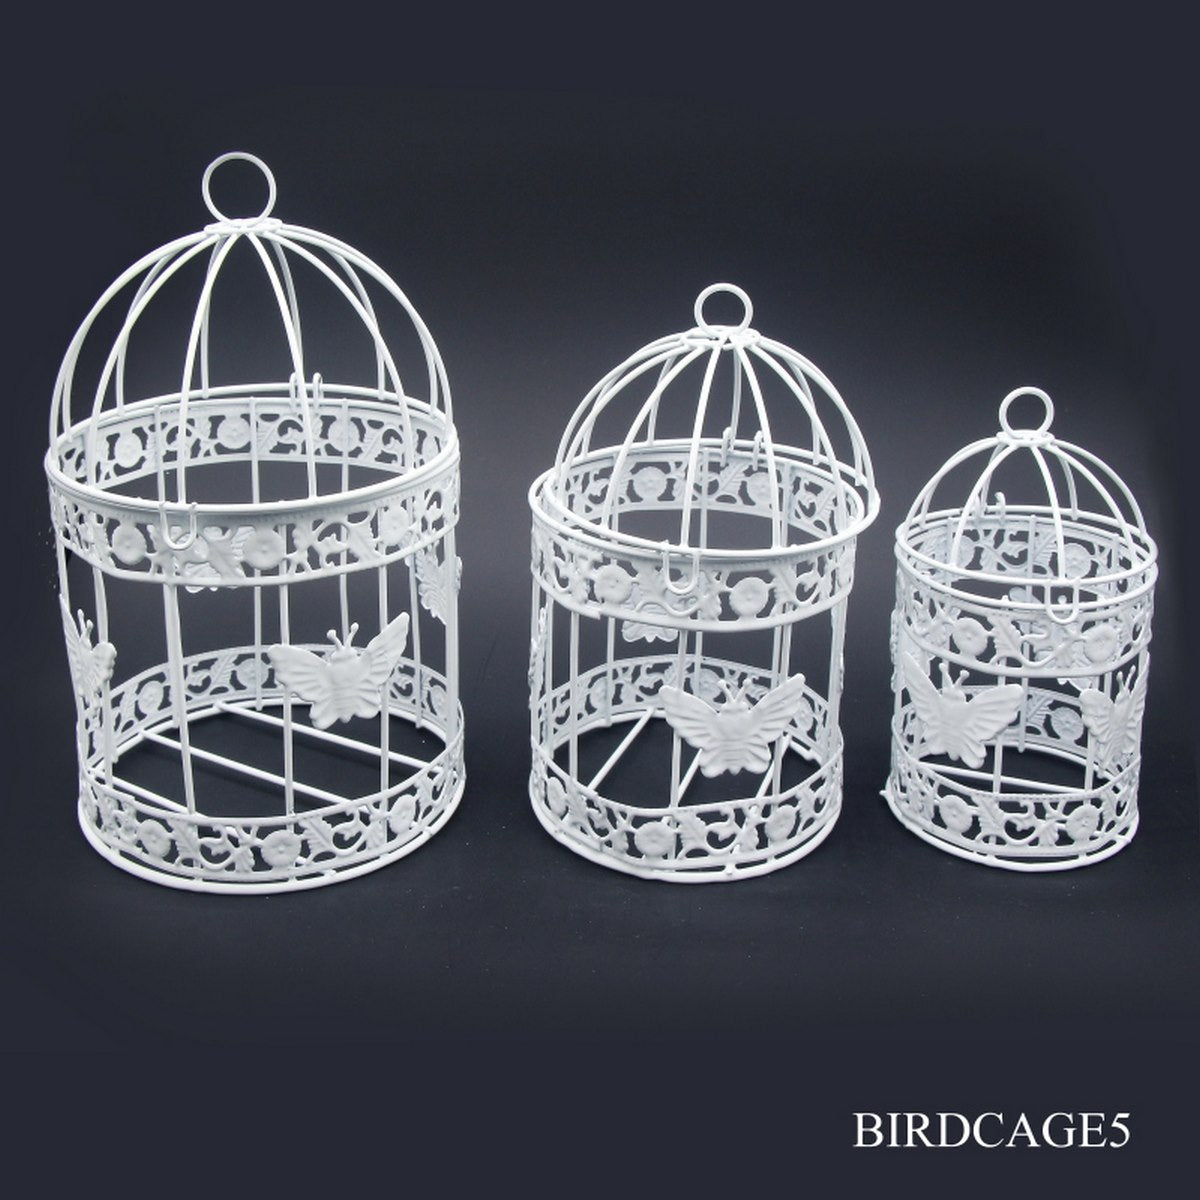 jags-mumbai Artificial Bird & Cage Medium Bird Cage Set of 3